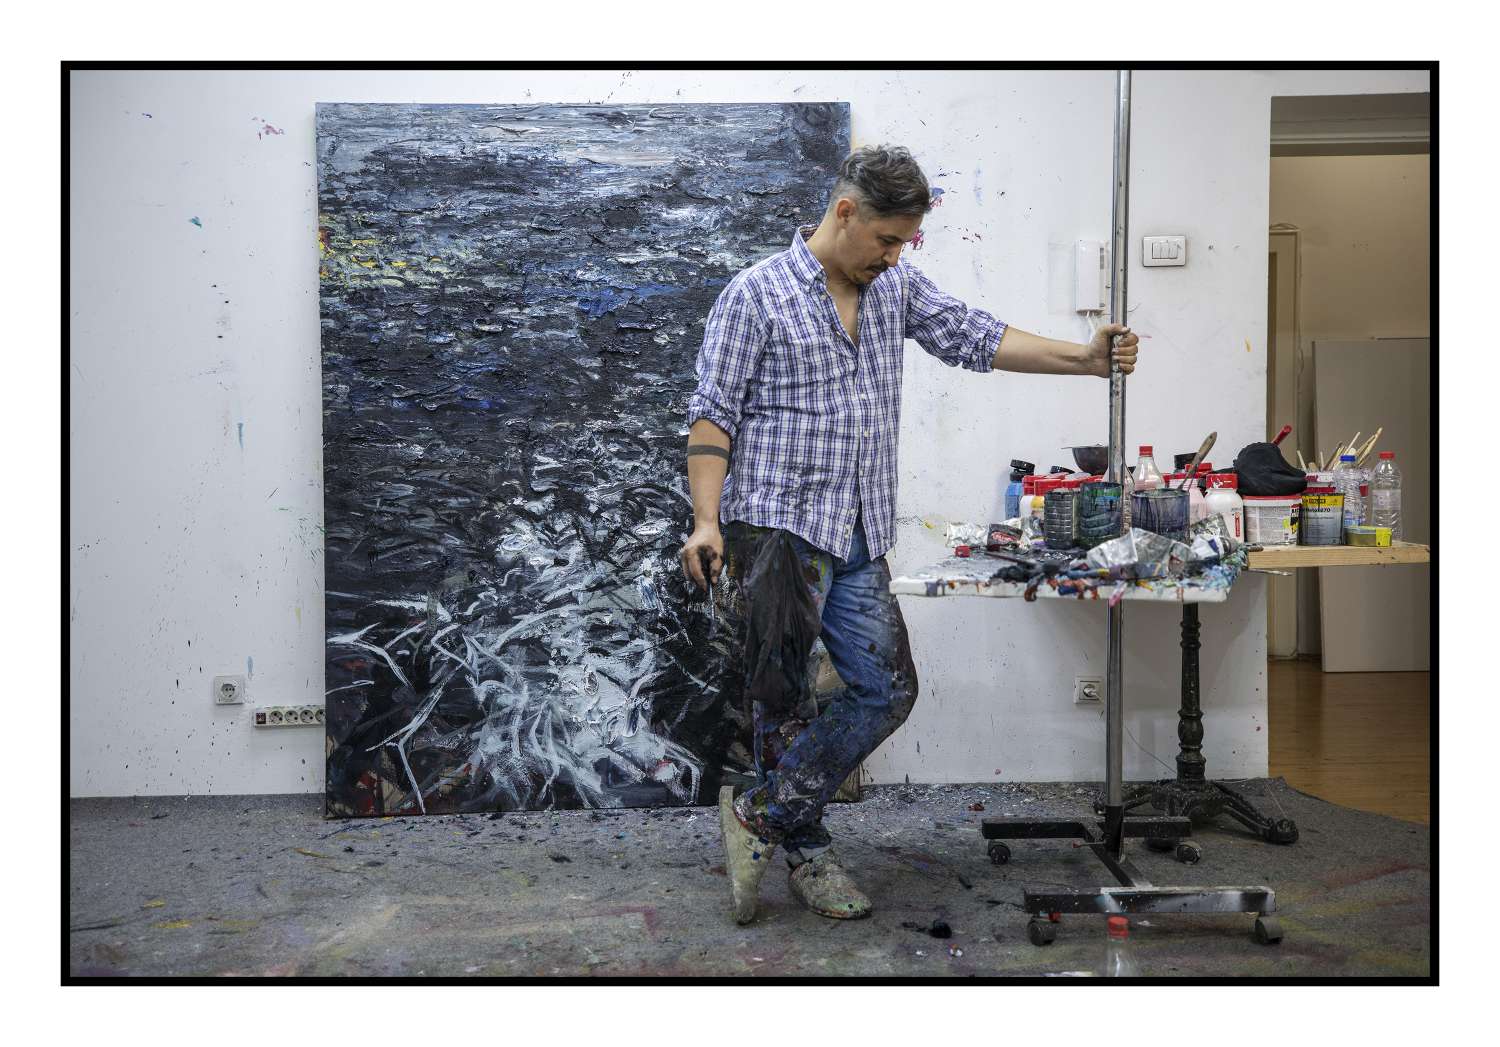 Artisti nga Kosova, Faton Kryeziu, vlerësohet lart në Zvicër